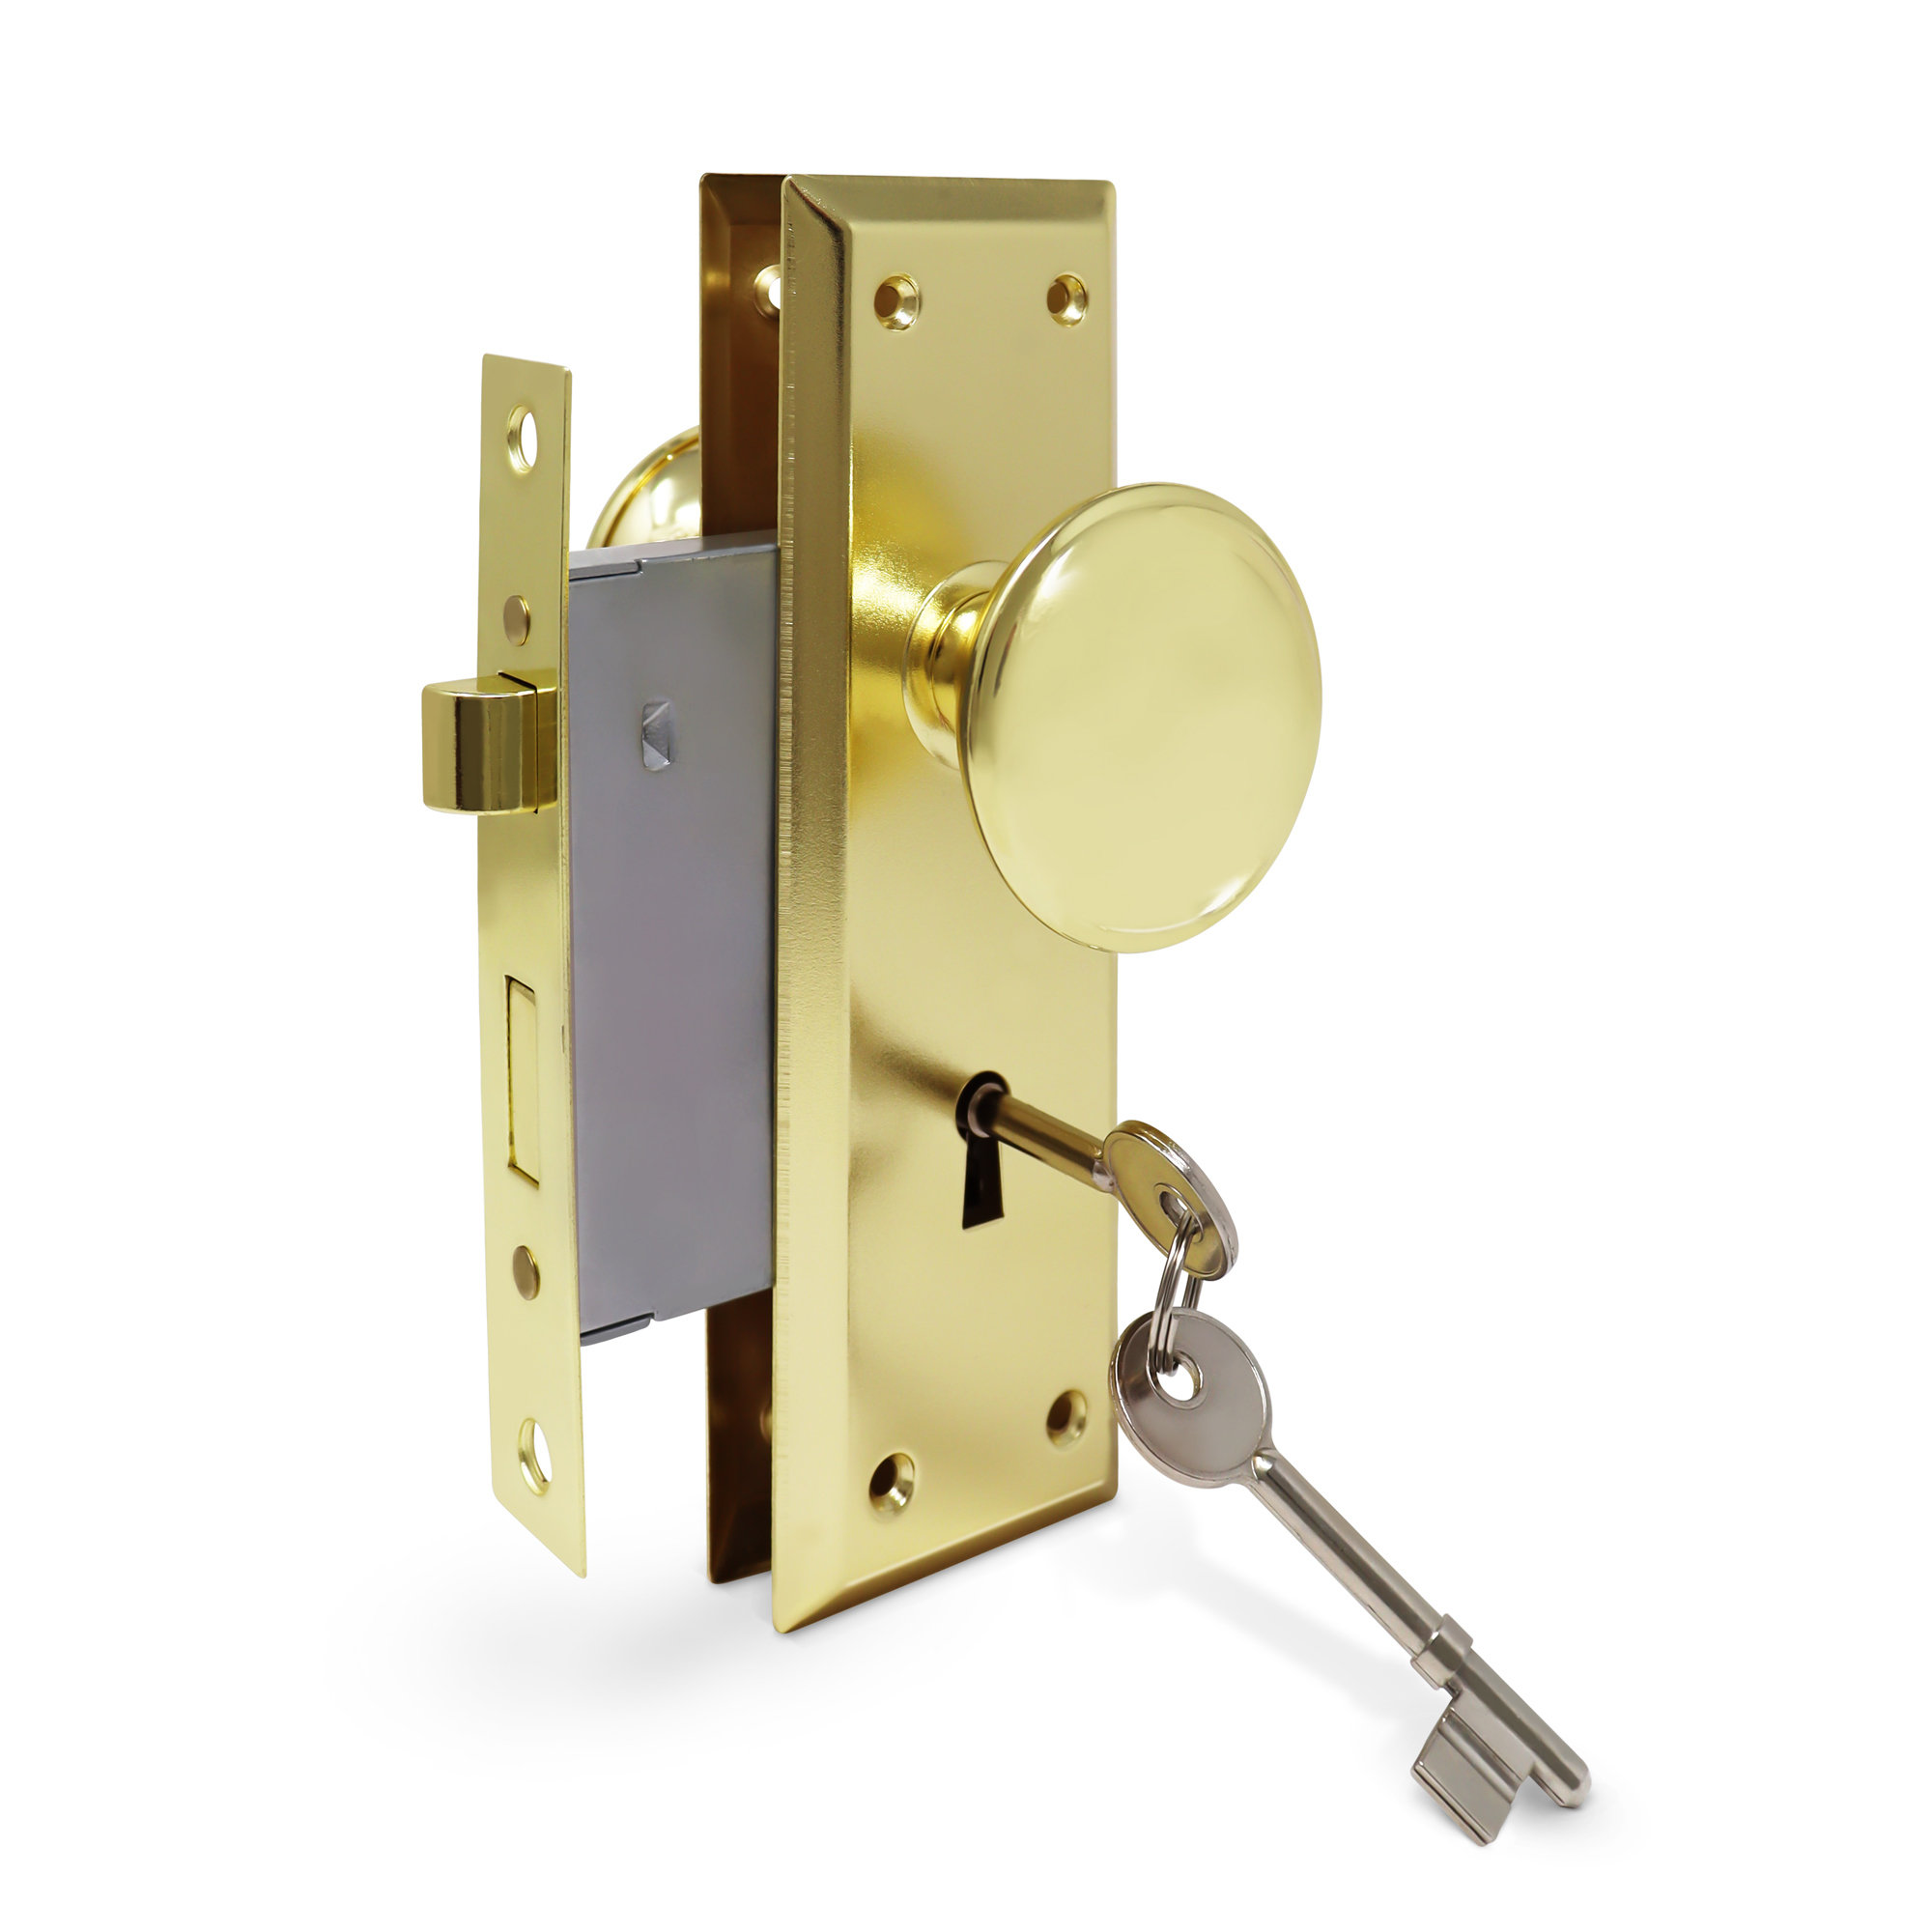 Plymouth Trim Bright Brass Entry Exterior Door Handleset and Orbit Door  Knob Rated AAA Security